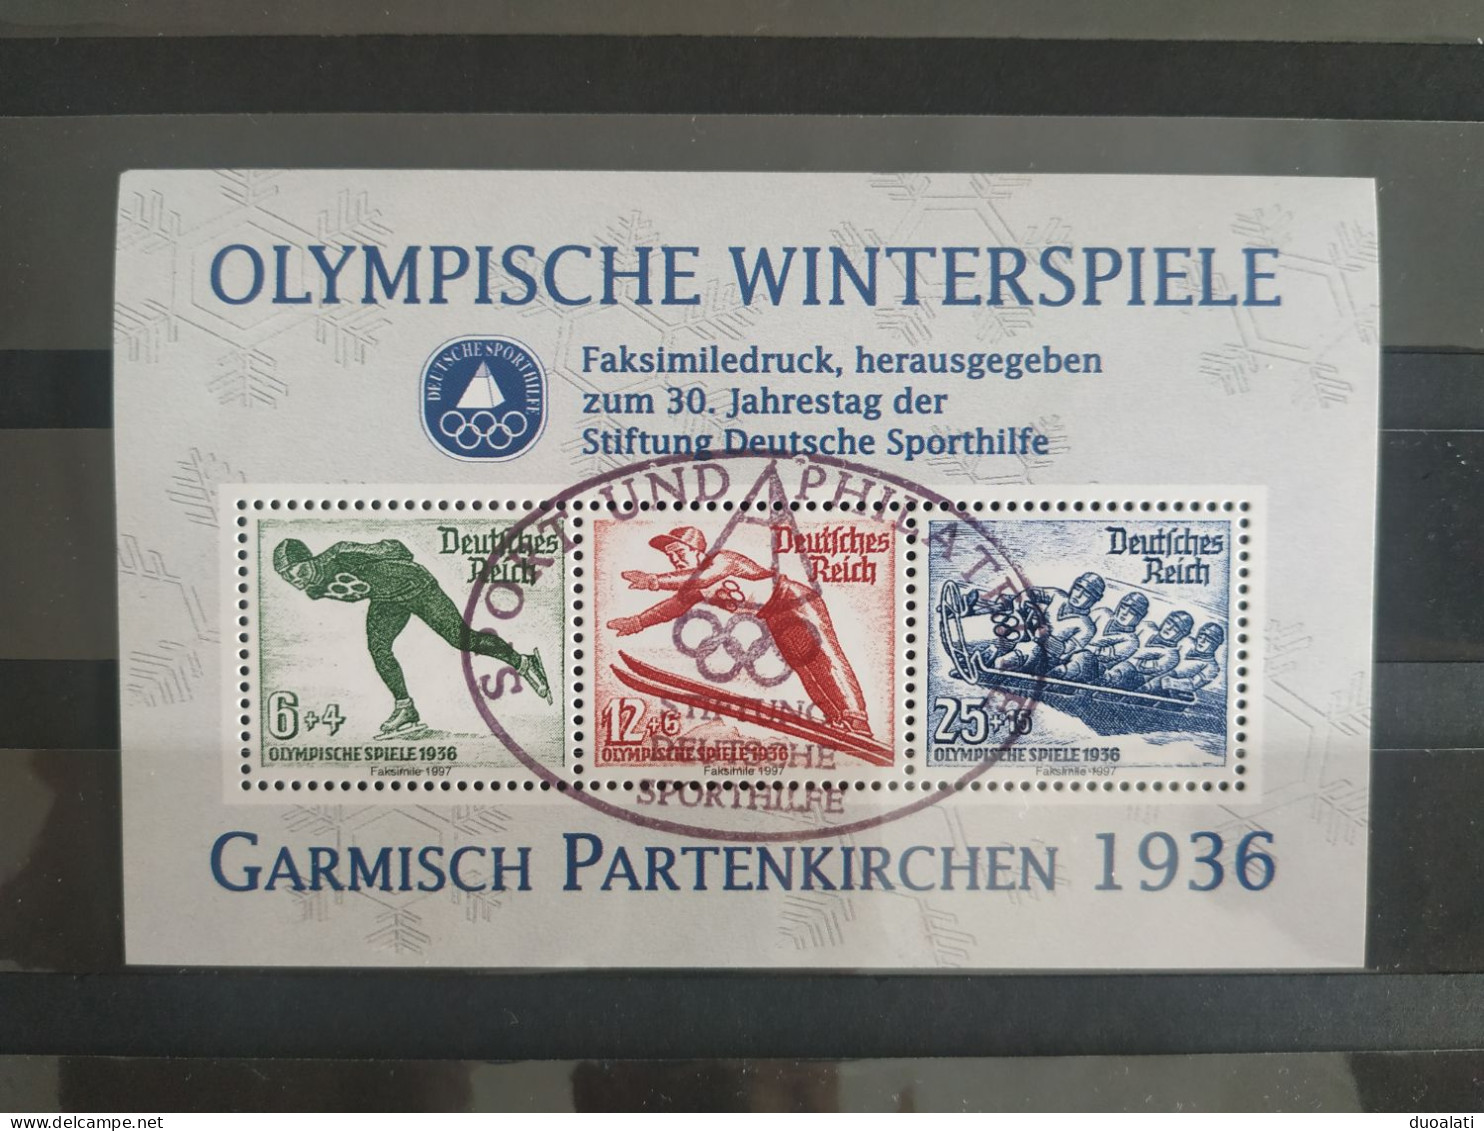 Germany 1997 Olympic Winter Games Deutsche Sporthilfe Für Den Sport Faksimile Garmisch Partenkirchen 1936 CTO - Hiver 1936: Garmisch-Partenkirchen